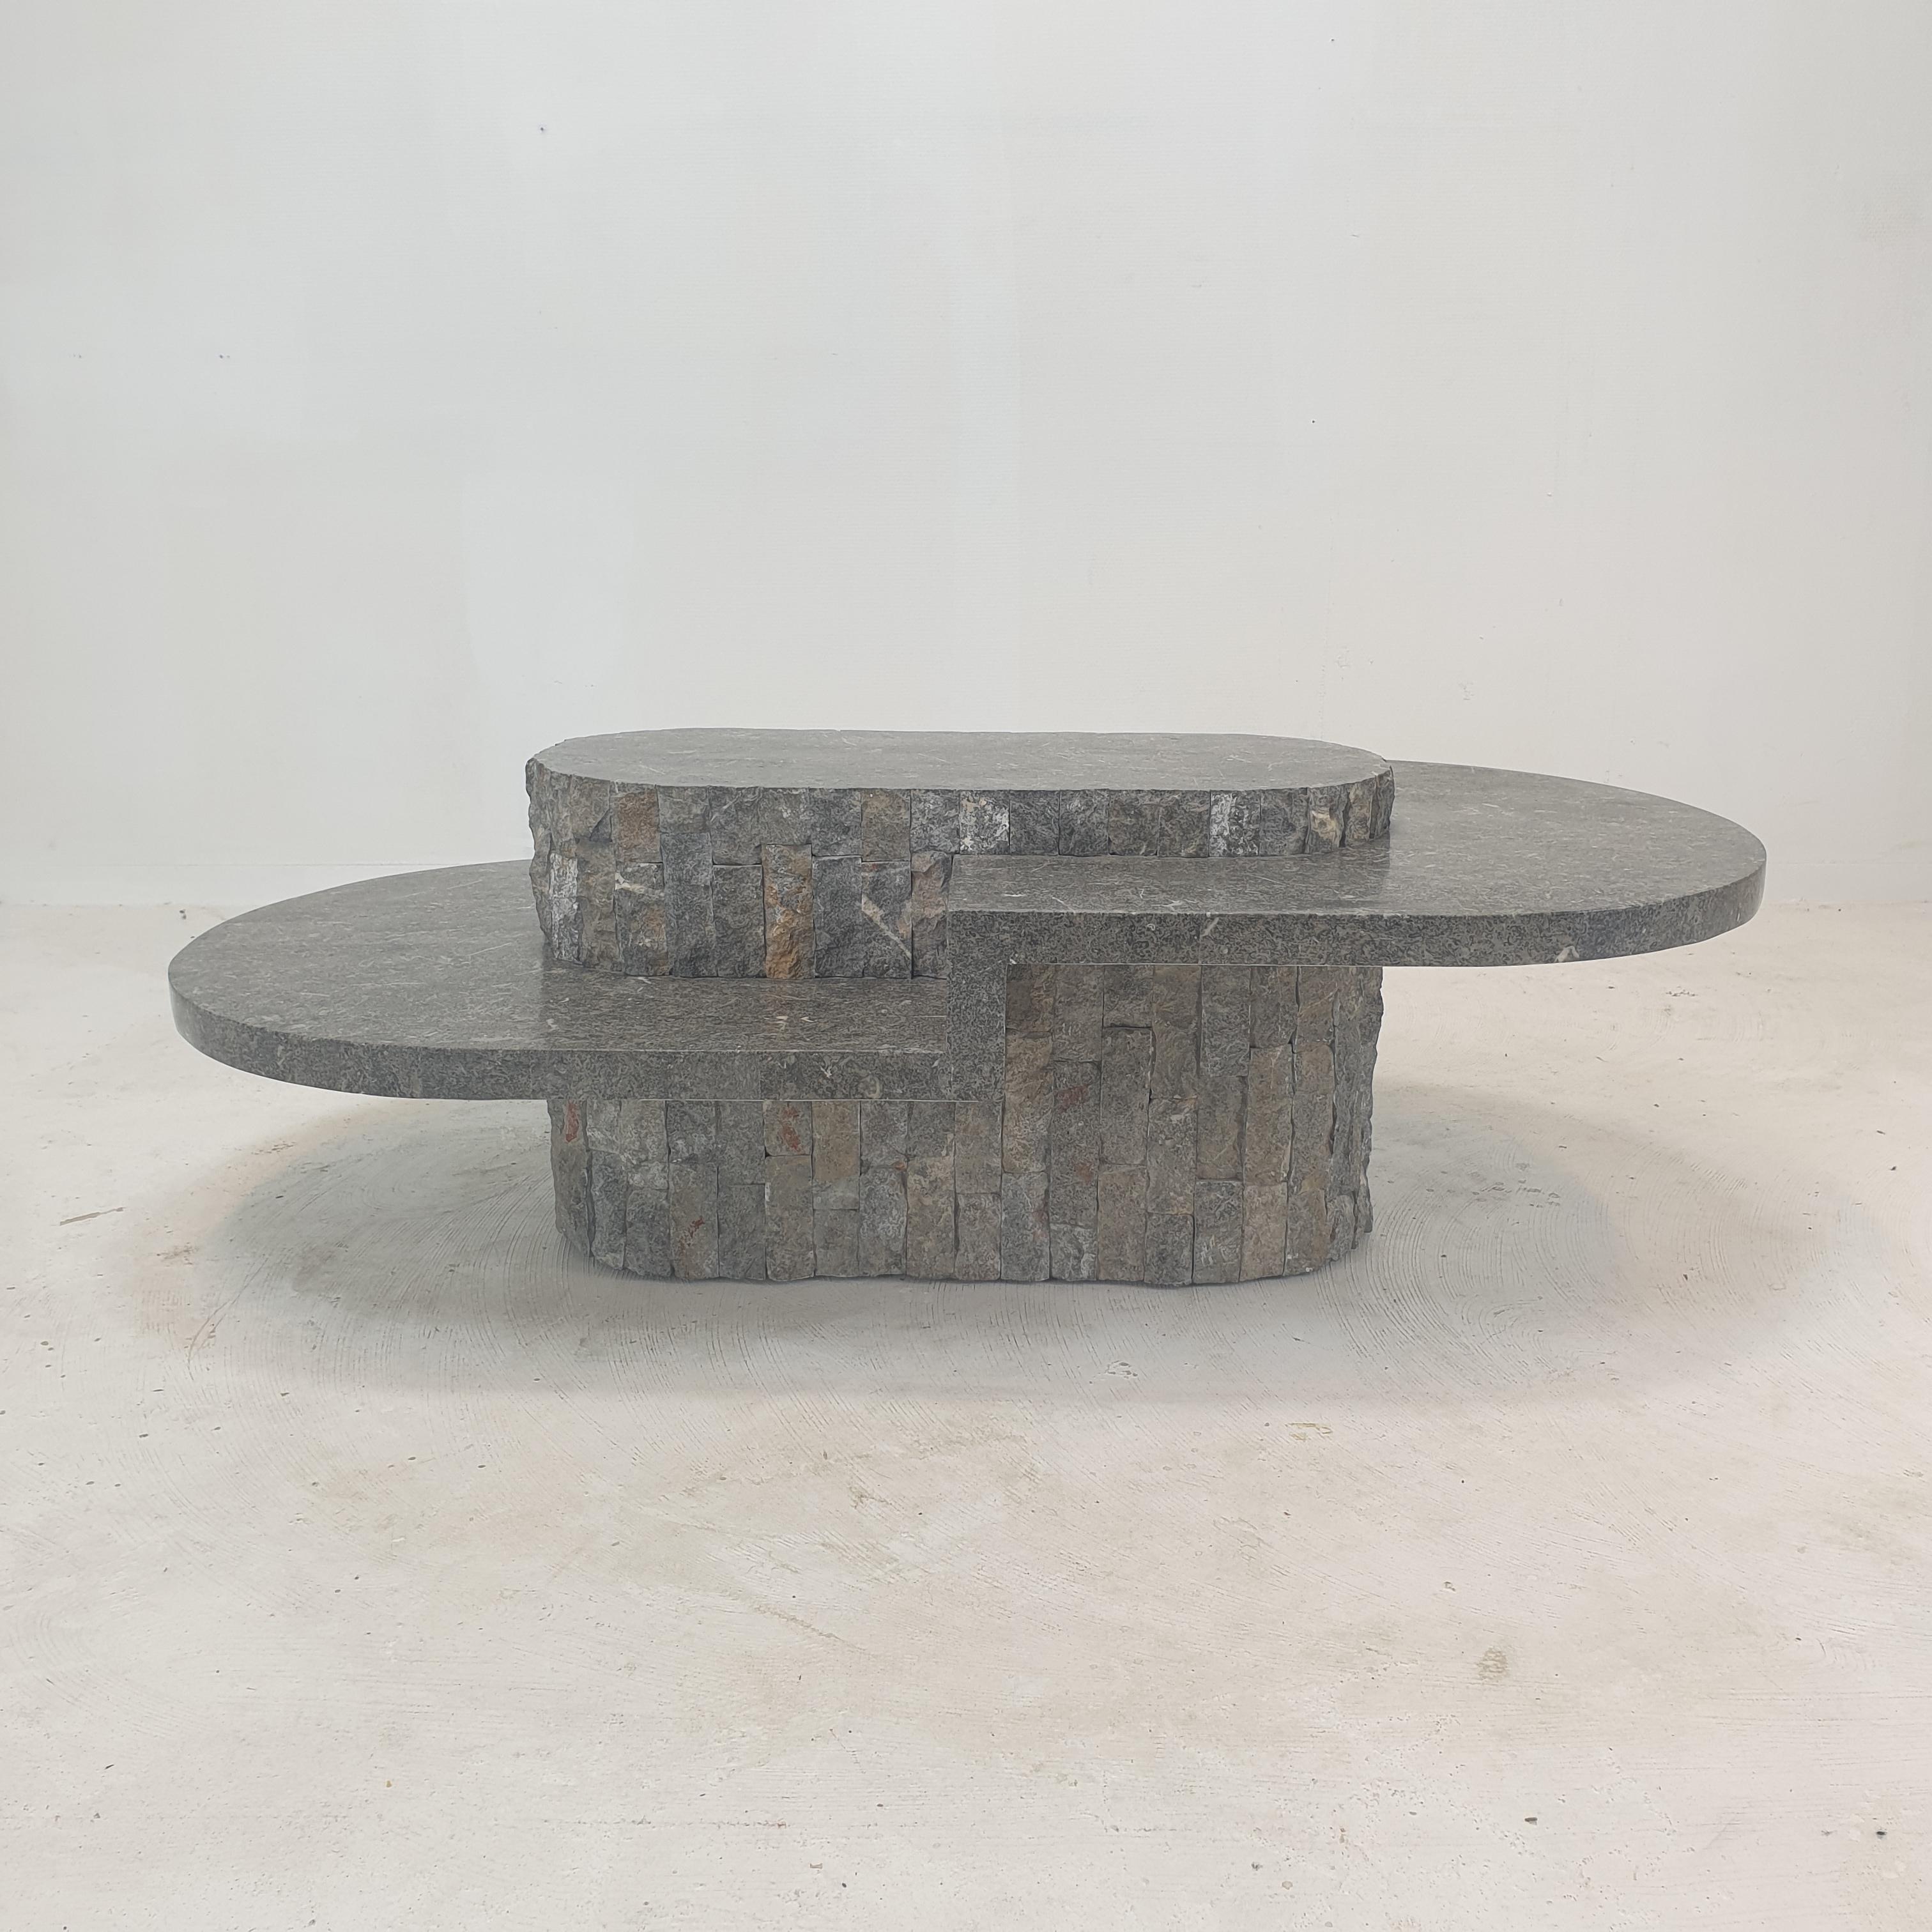 Seltener und sehr schöner ovaler Couchtisch oder Beistelltisch von Magnussen Ponte, 1980er Jahre.

Dieser atemberaubende Tisch ist aus grobkantigem Mactan-Stein oder Fossil-Stein gefertigt.

Dies ist ein einzigartiges Stück!

Wir arbeiten mit